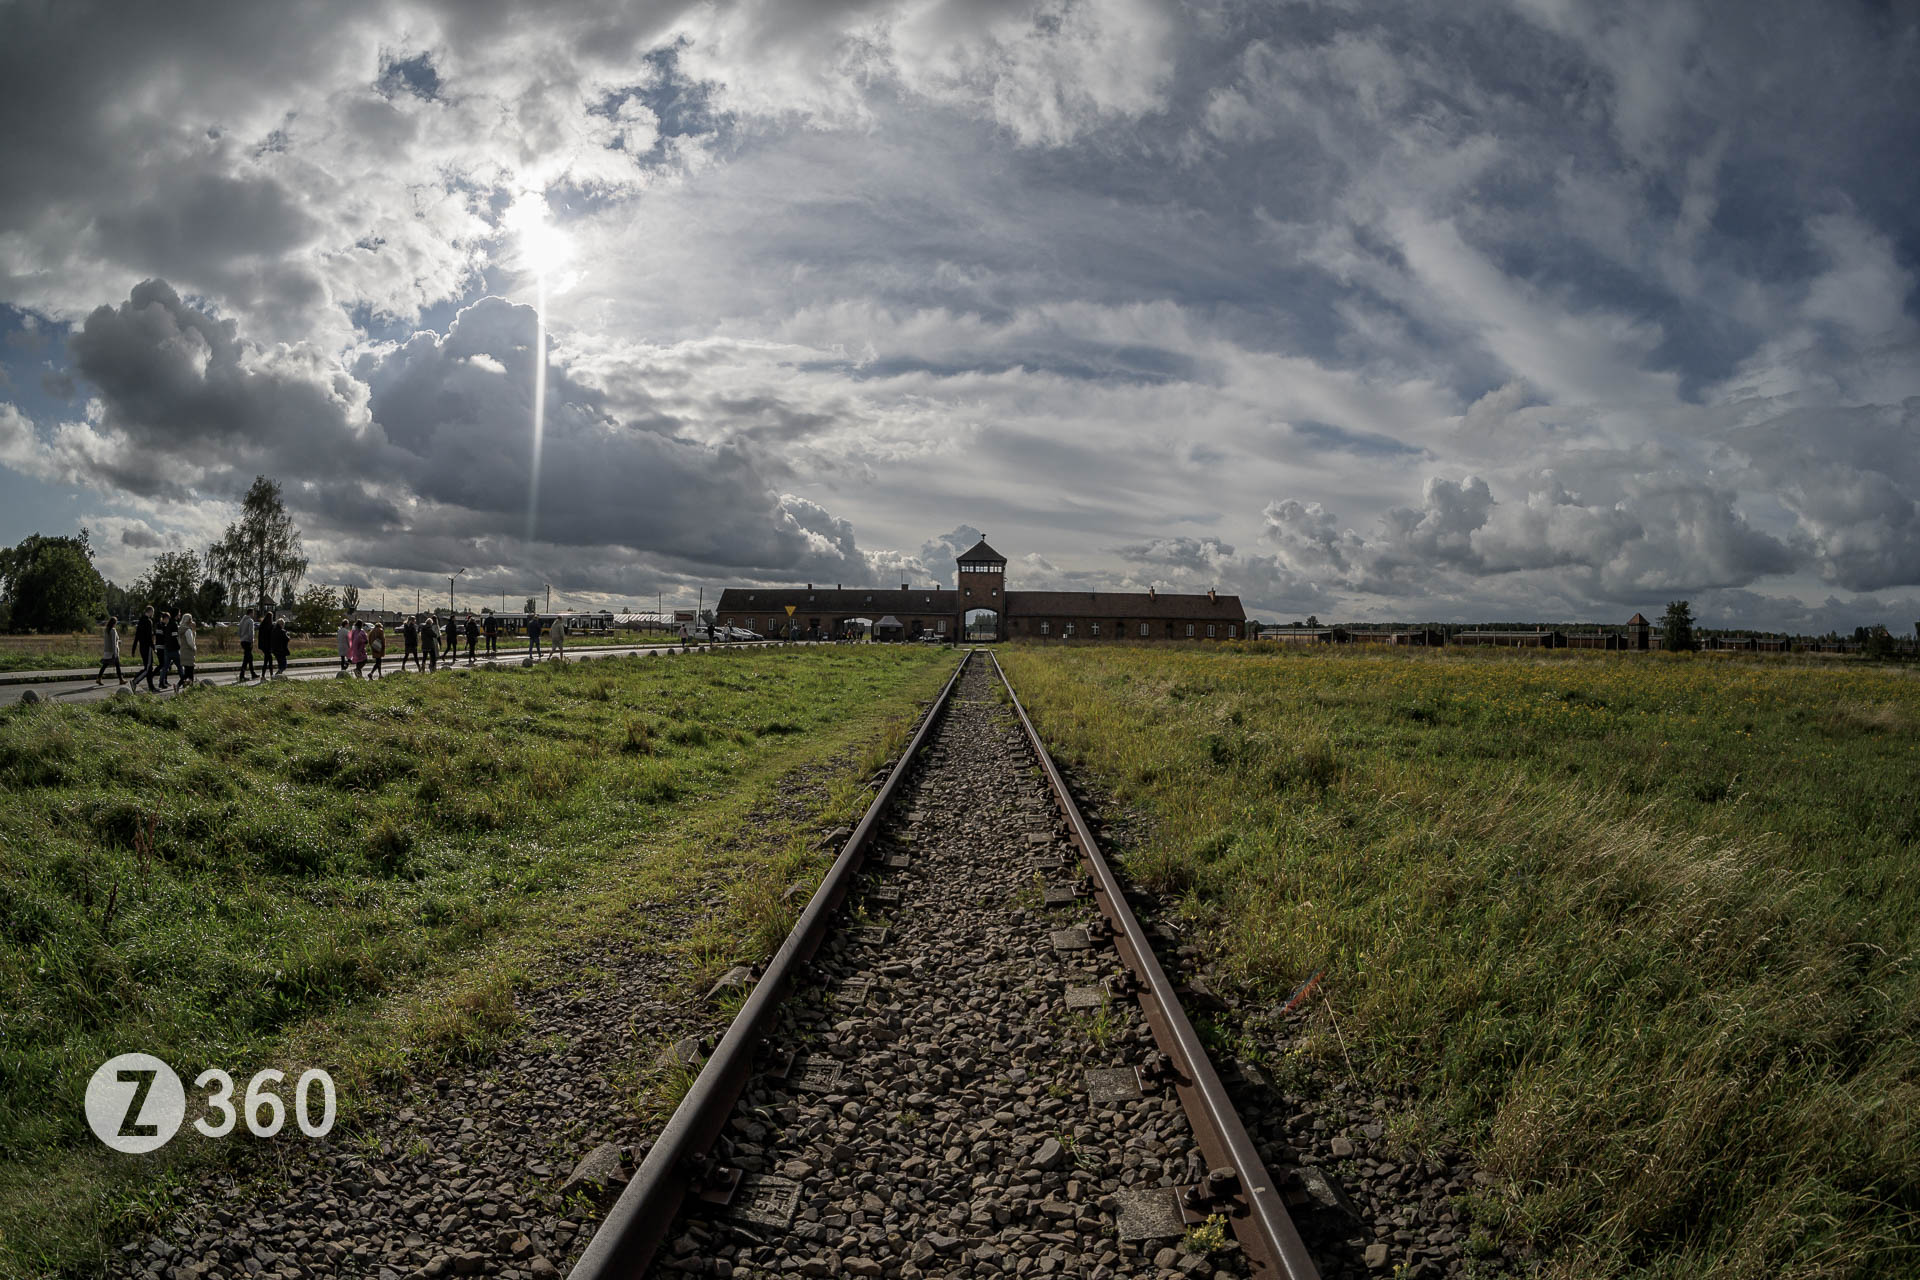 The Entrance to Auschwitz II, Birkenau